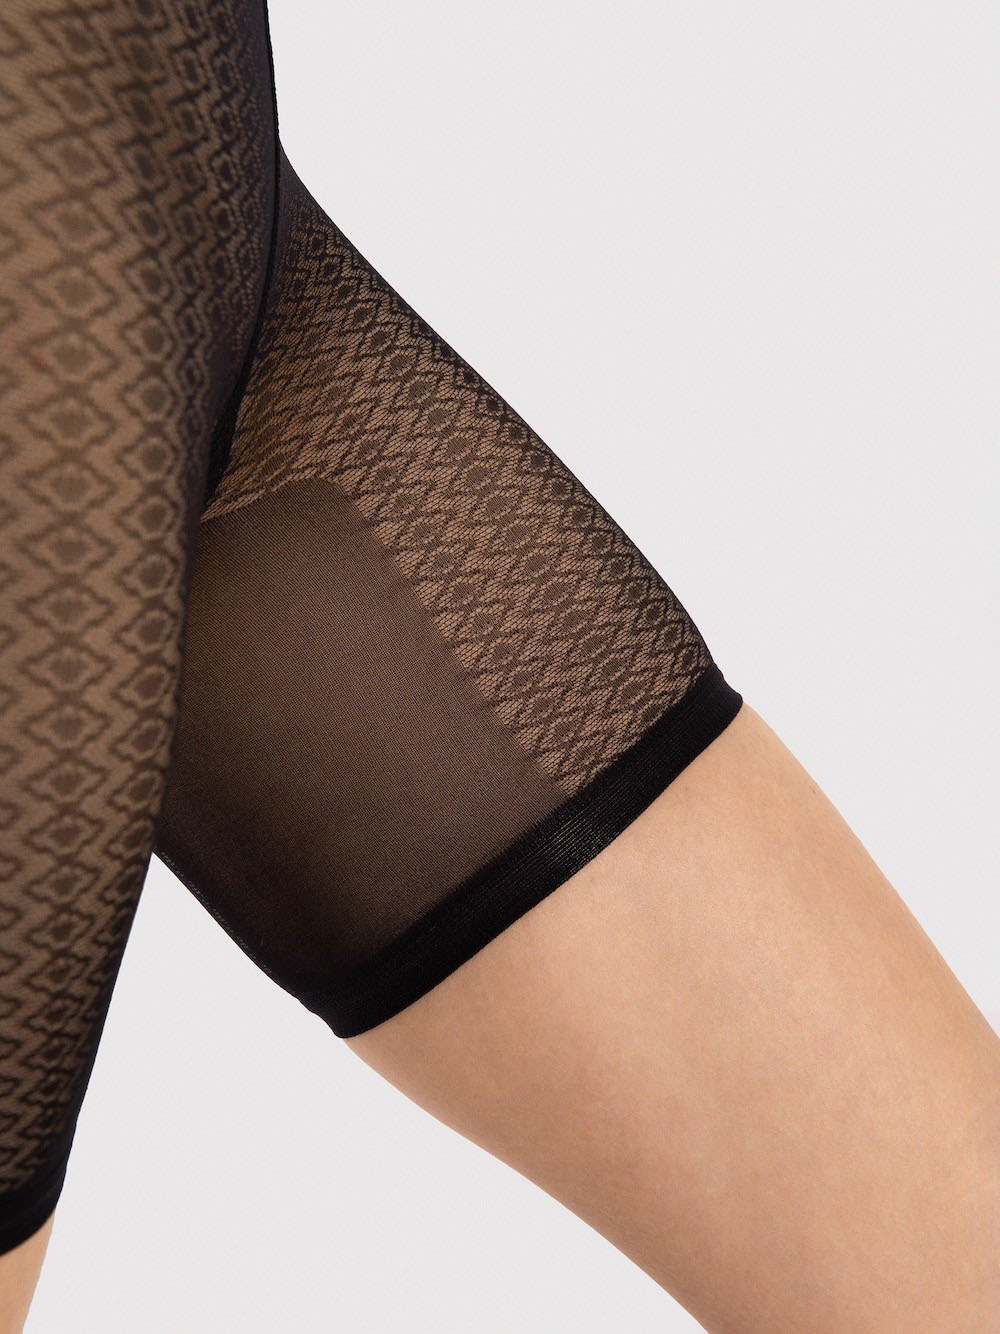 Высокие эластичные женские трусики шорты для защиты от натирания бёдер Fiore M0011 #3